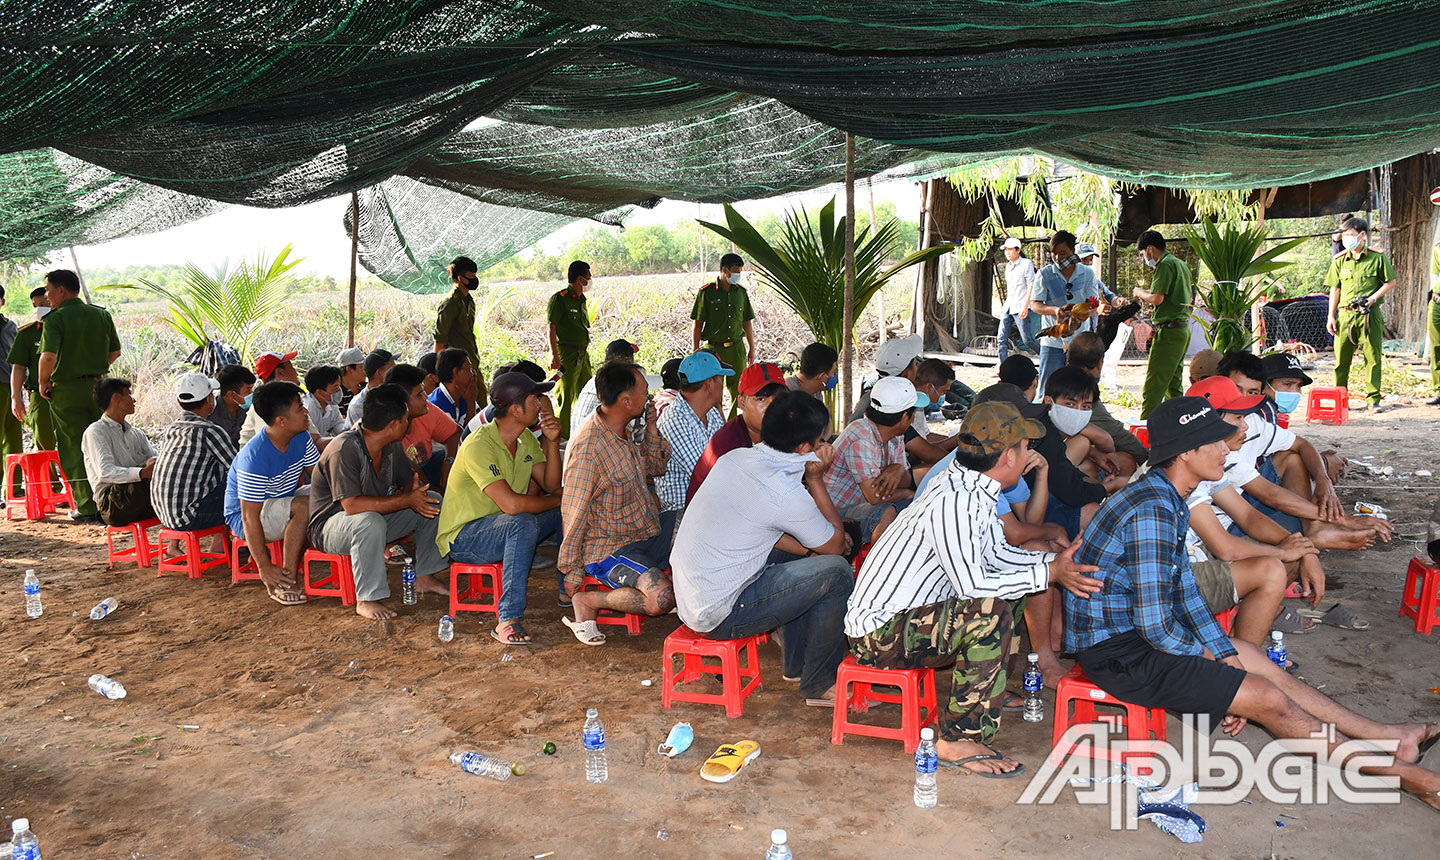 Lực lượng Công an phá tụ điểm đá gà ăn thua bằng tiền tại xã Thạnh Tân, huyện Tân Phước ngày 18-3-2020. Ảnh: LÊ HOÀI